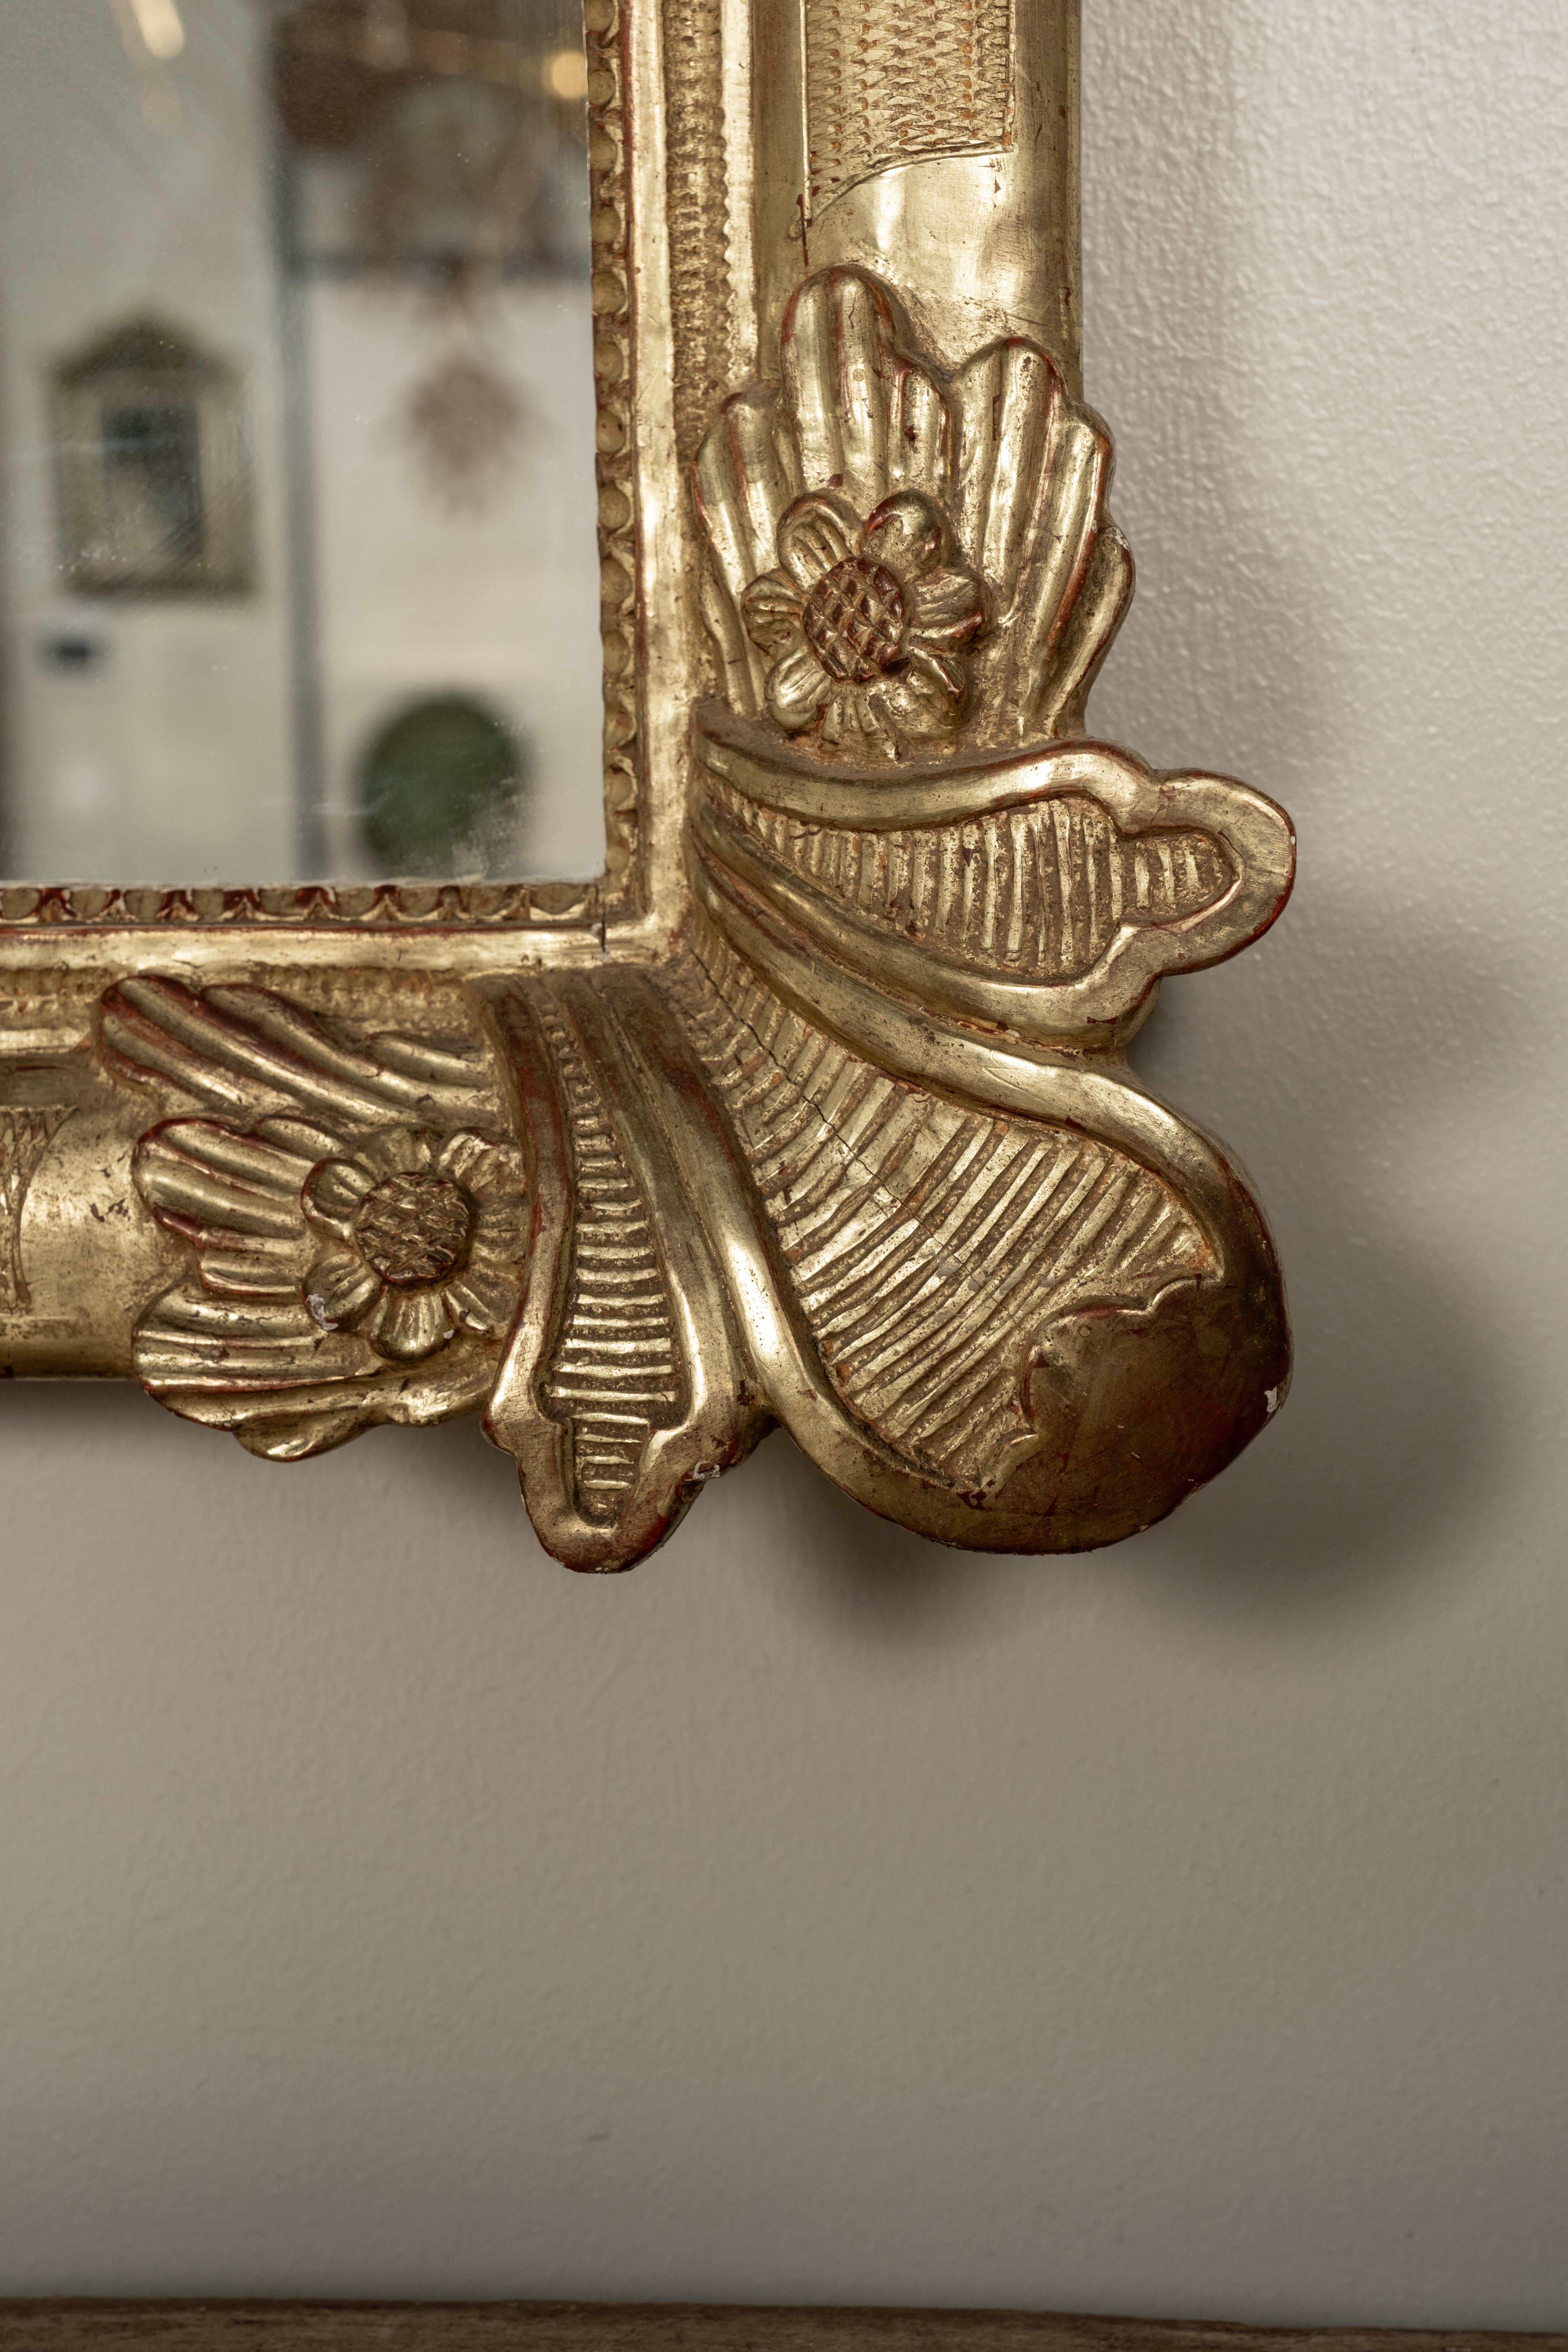 Miroir en bois doré de style Louis XV avec cartouche.
Ce miroir en bois doré de style Louis XV, datant de la fin du XIXe siècle, présente un magnifique motif de feuilles sculptées à chaque coin, ainsi qu'un superbe cartouche central au